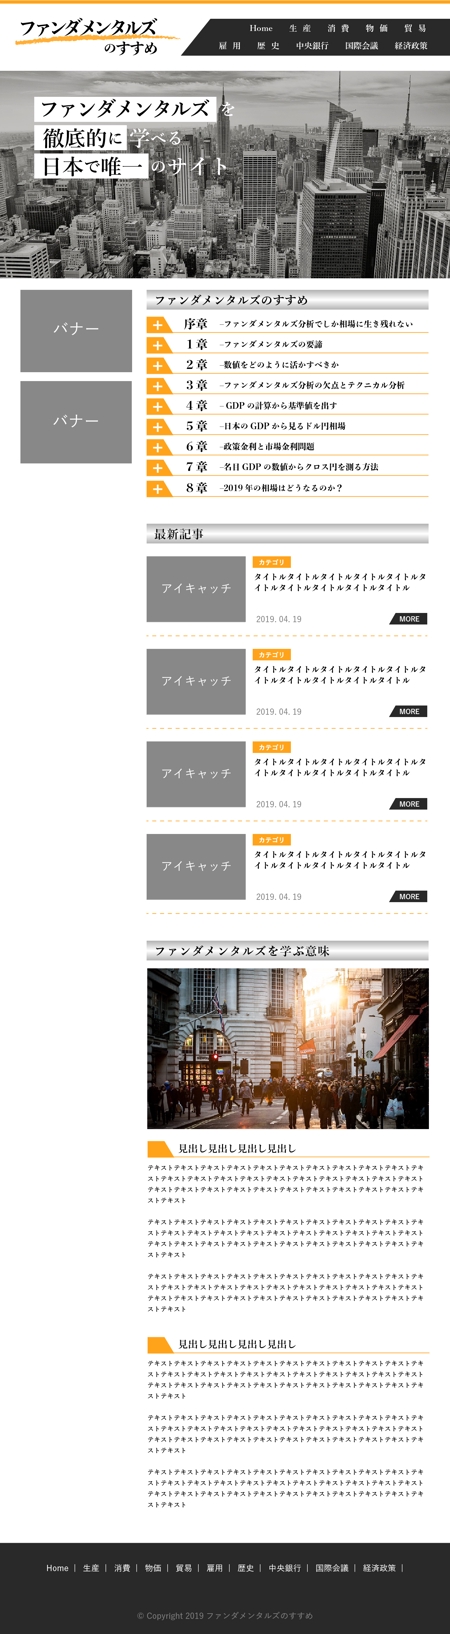 加藤久佳 (writov)さんのFX投資情報サイトのトップページデザインへの提案